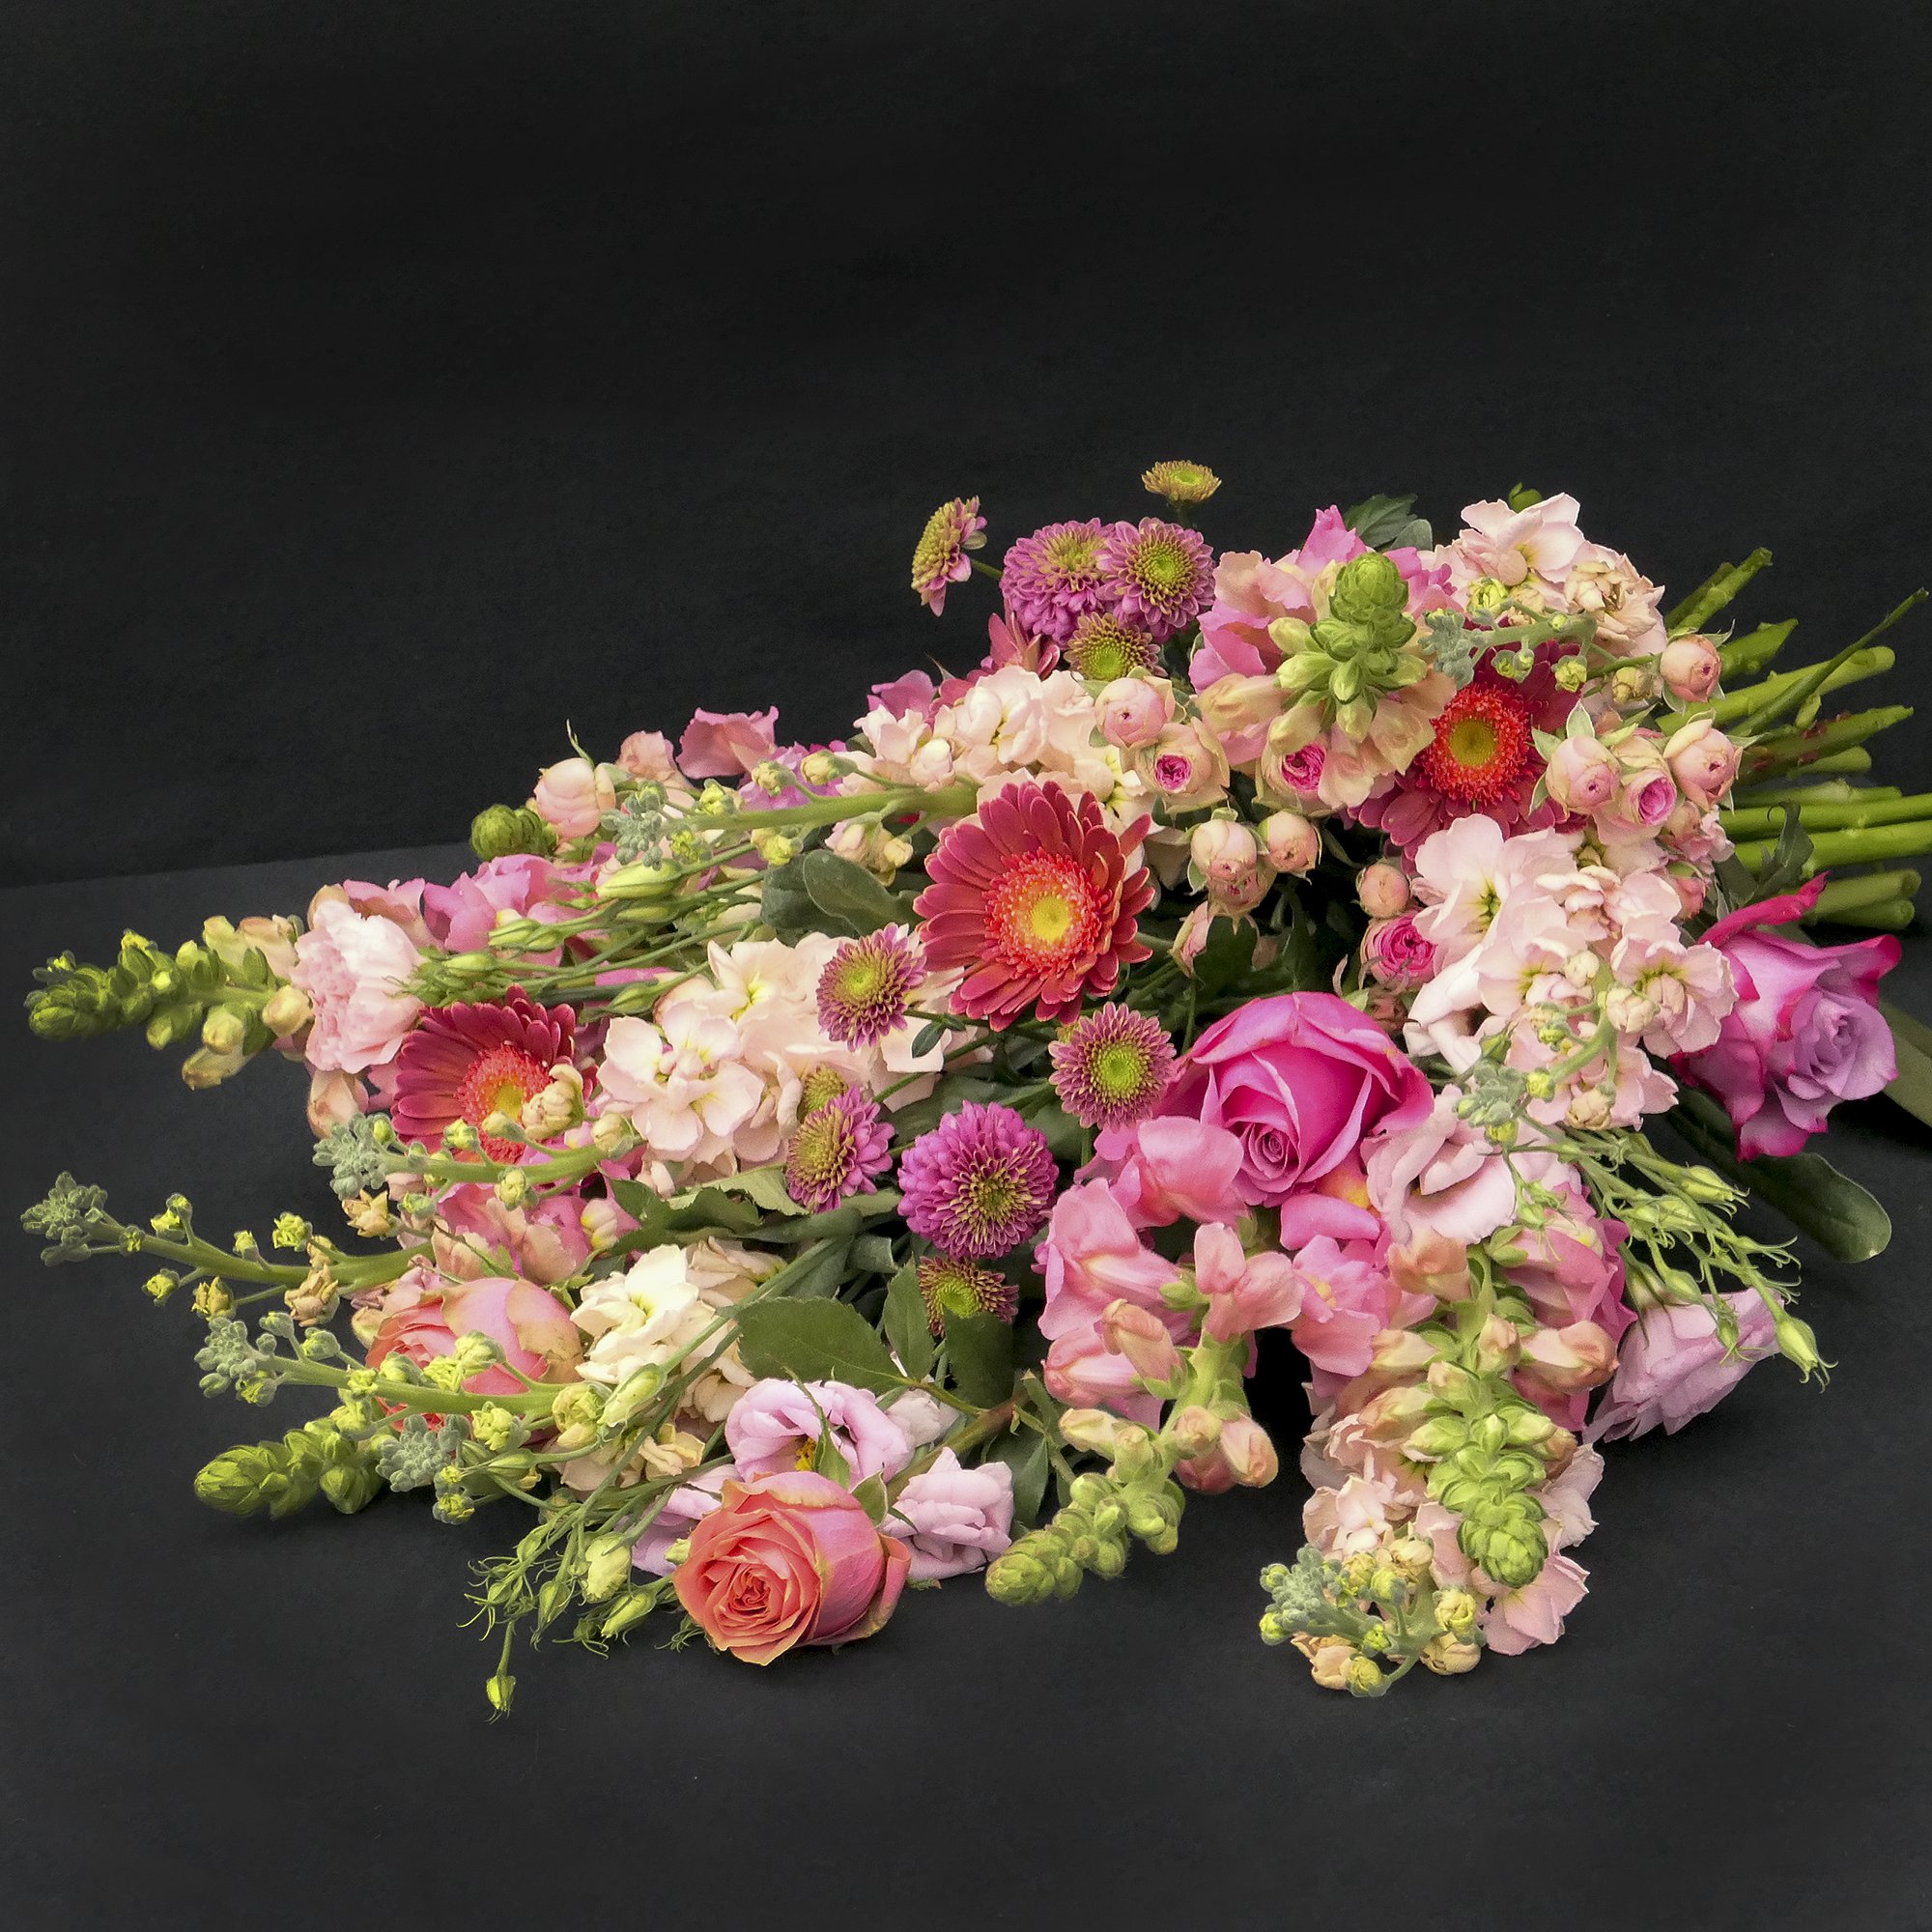 DeKrachtvanBloemen-bloemen bij overlijden-rouwboeketten-13jan-01-2.jpg